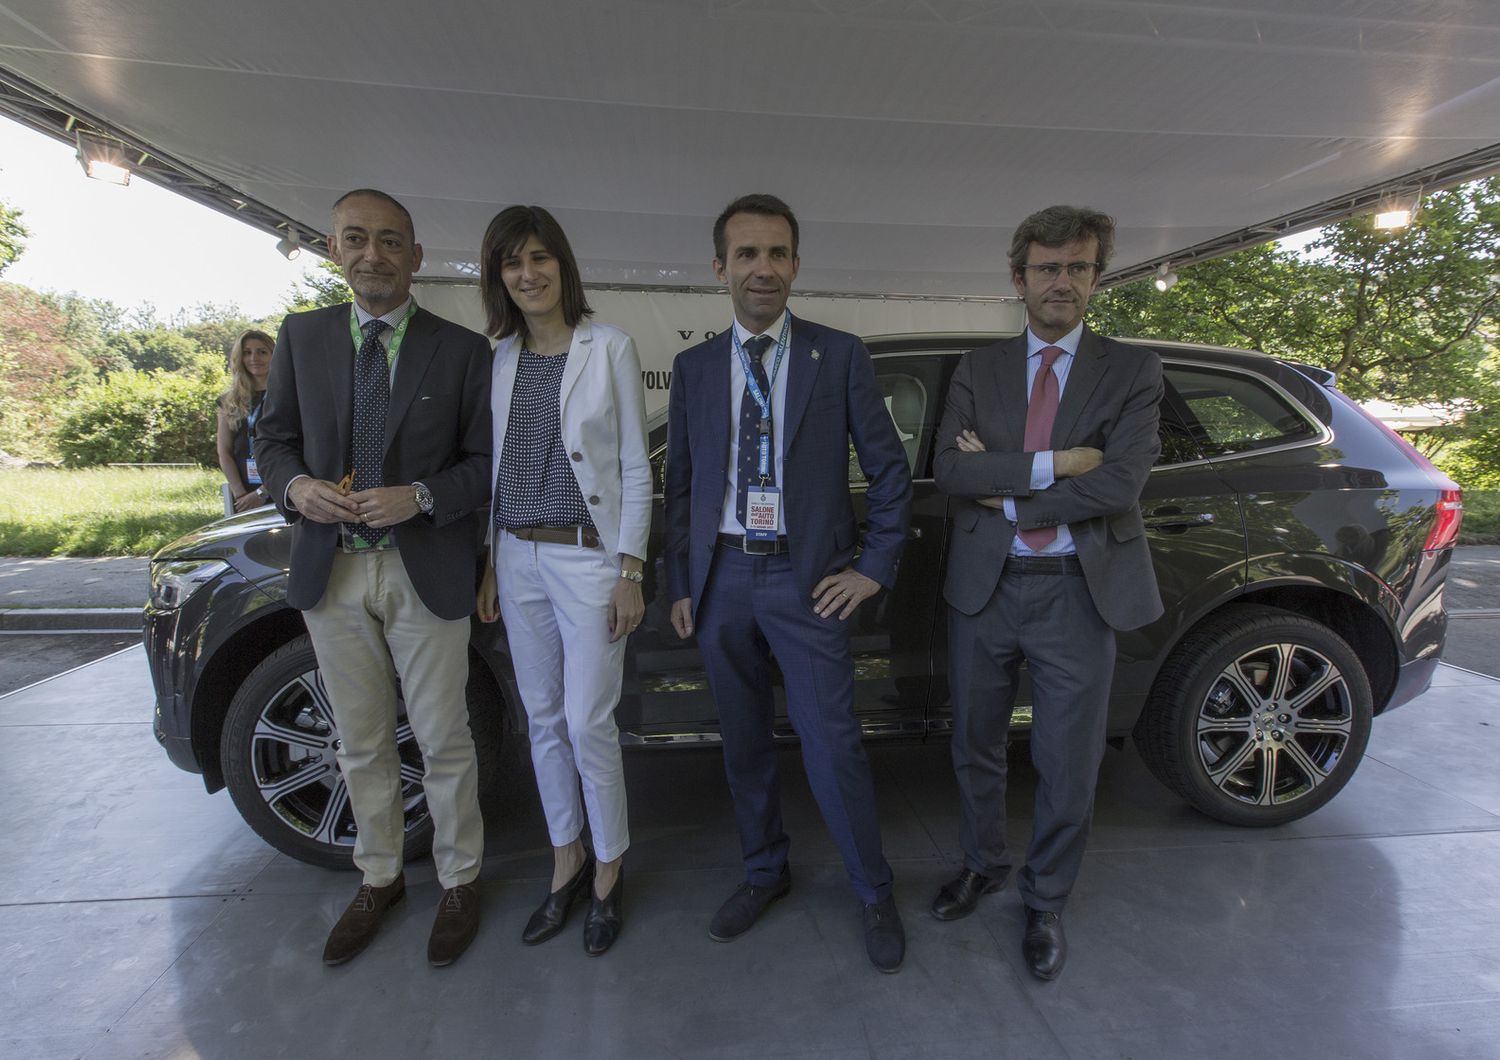 Salone dell'Auto Torino 2017, la Sindaca di Torino Chiara Appendino in visita allo Stand Volvo con il Presidente del Salone Andrea Levy